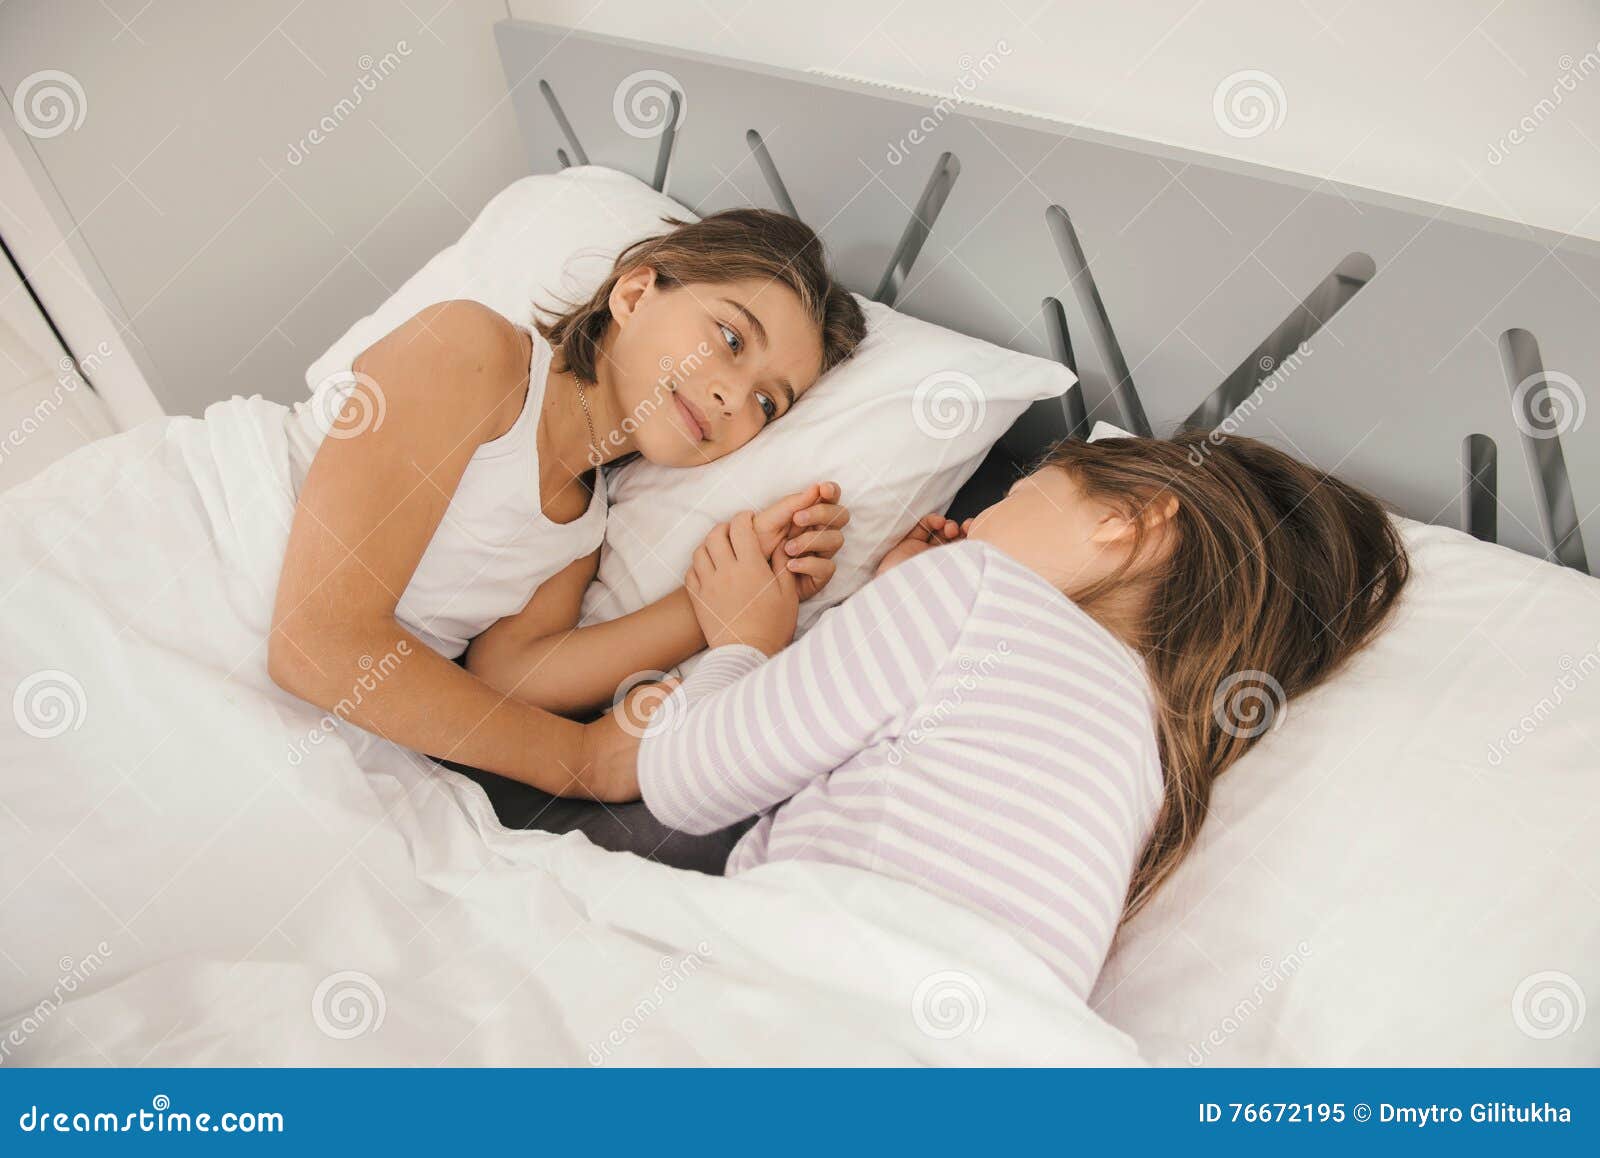 Сестра залезла спящему брату. Две юные в кровати. Подруги на кровати. Две девочки лежат. Залезла в кровать к брату.